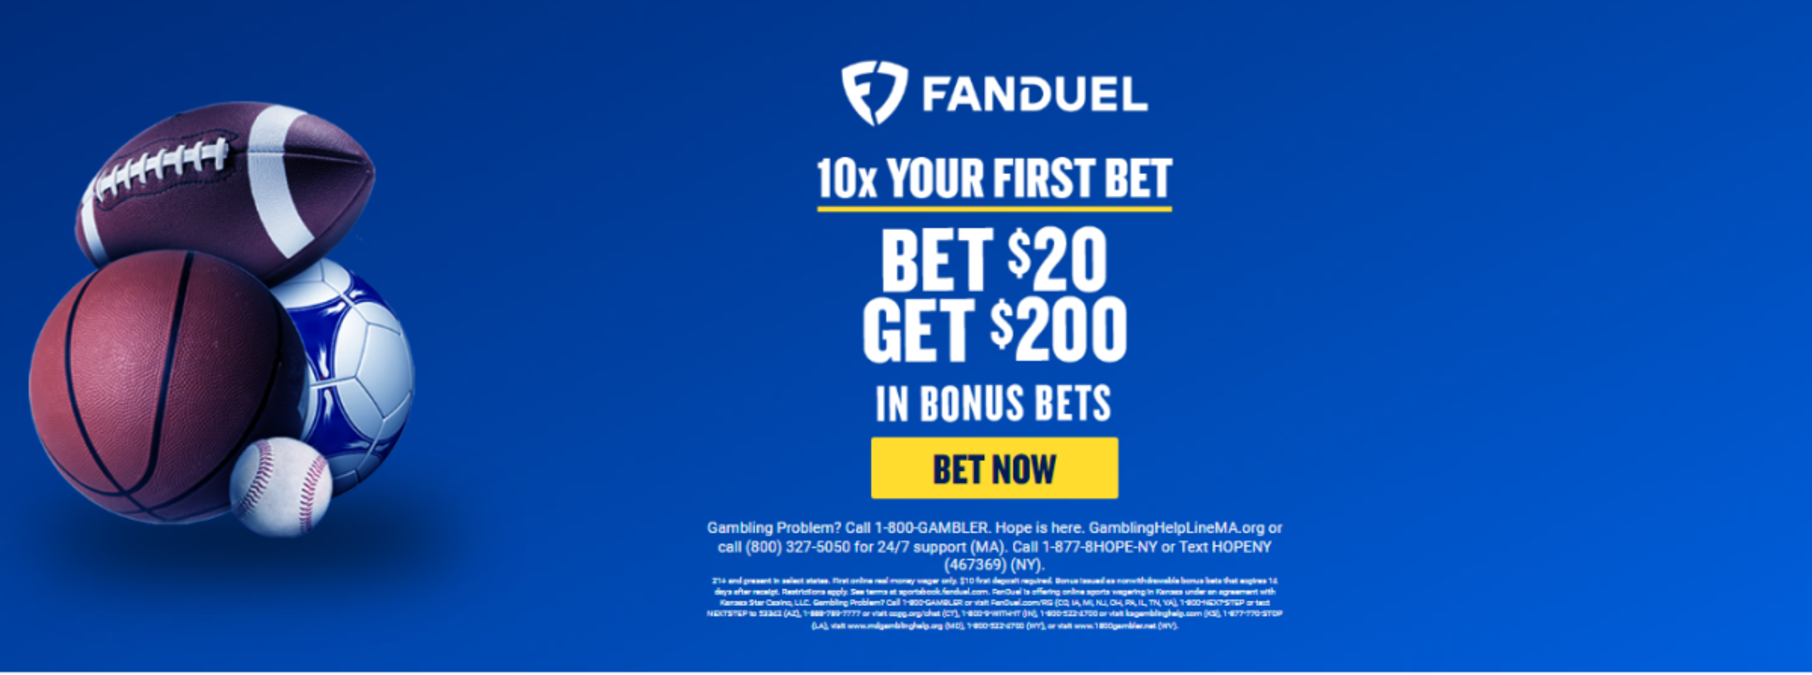 FanDuel Bet $20, $200